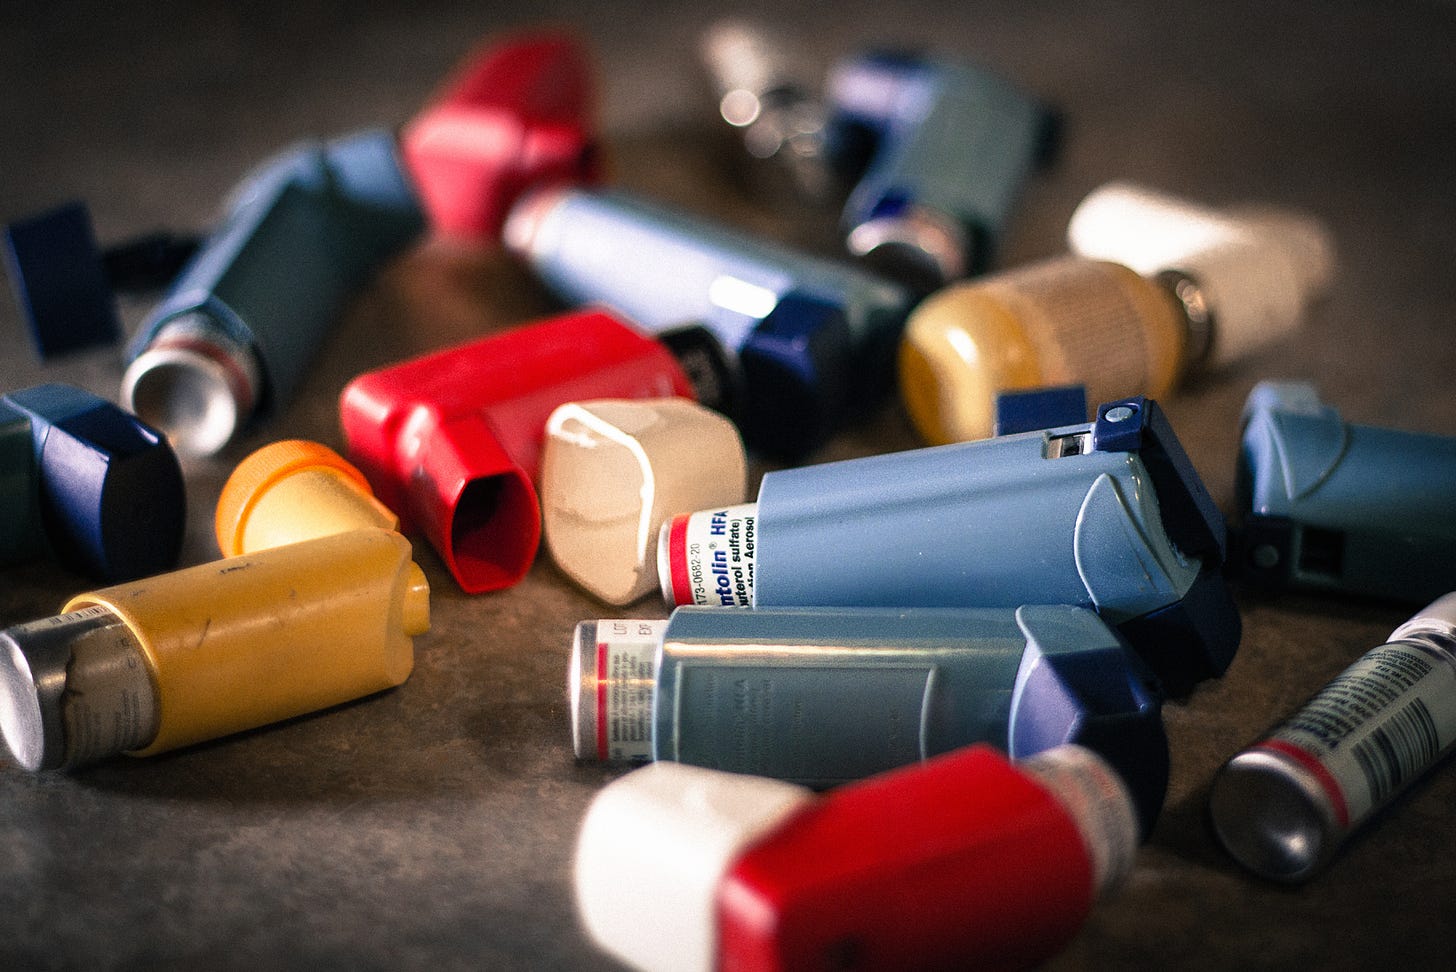 An assortment of asthma inhalers